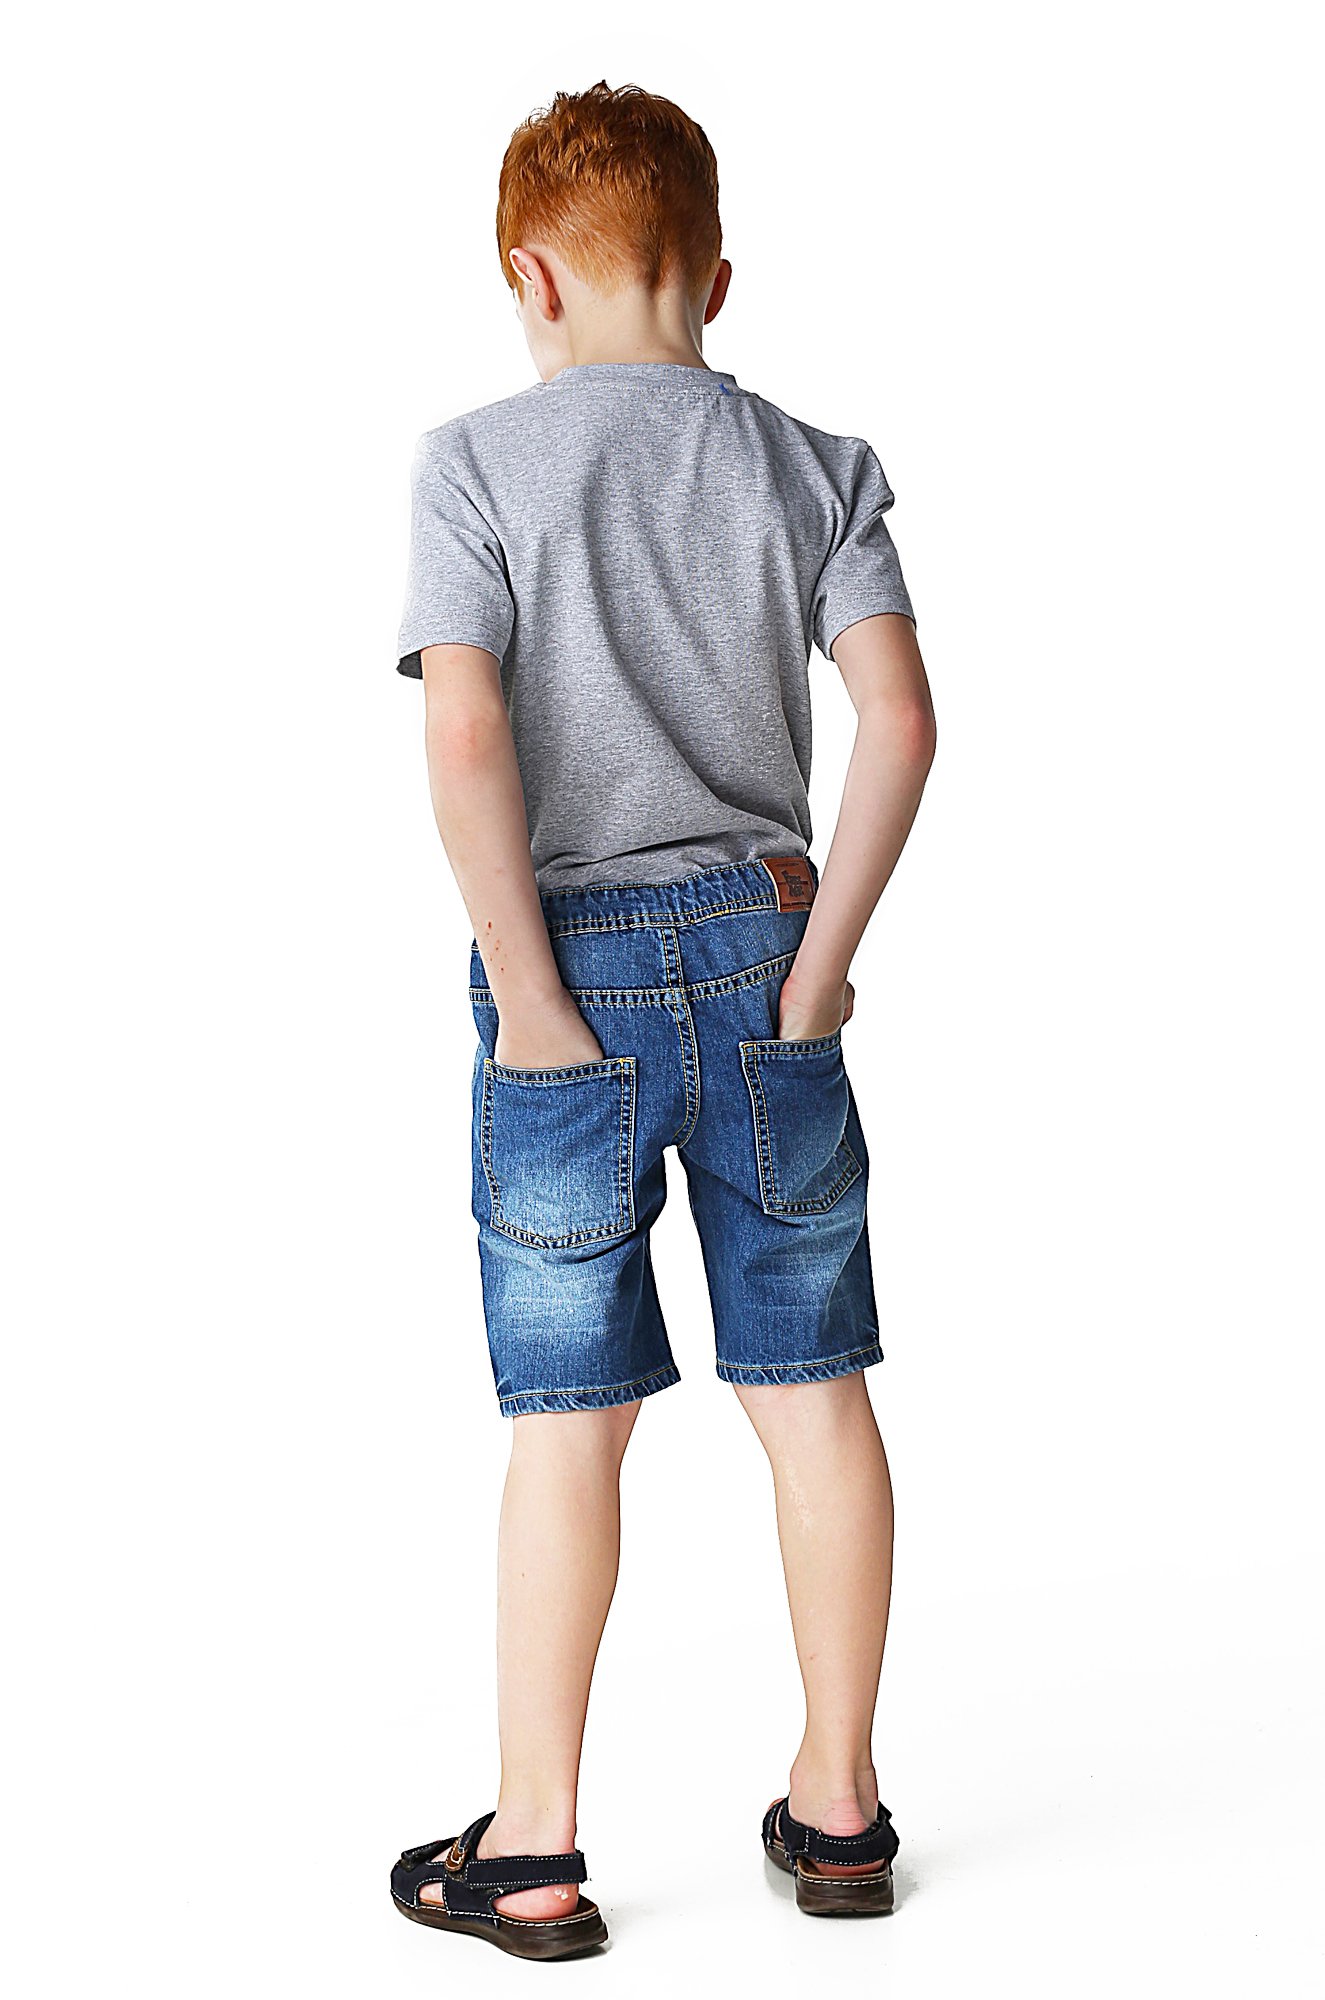 Джинсовые шорты для мальчика. Шорты для мальчика. Брючные шорты для мальчика. Мальчик в джинсовых шортах. Мальчики подростки в джинсовых шортах.